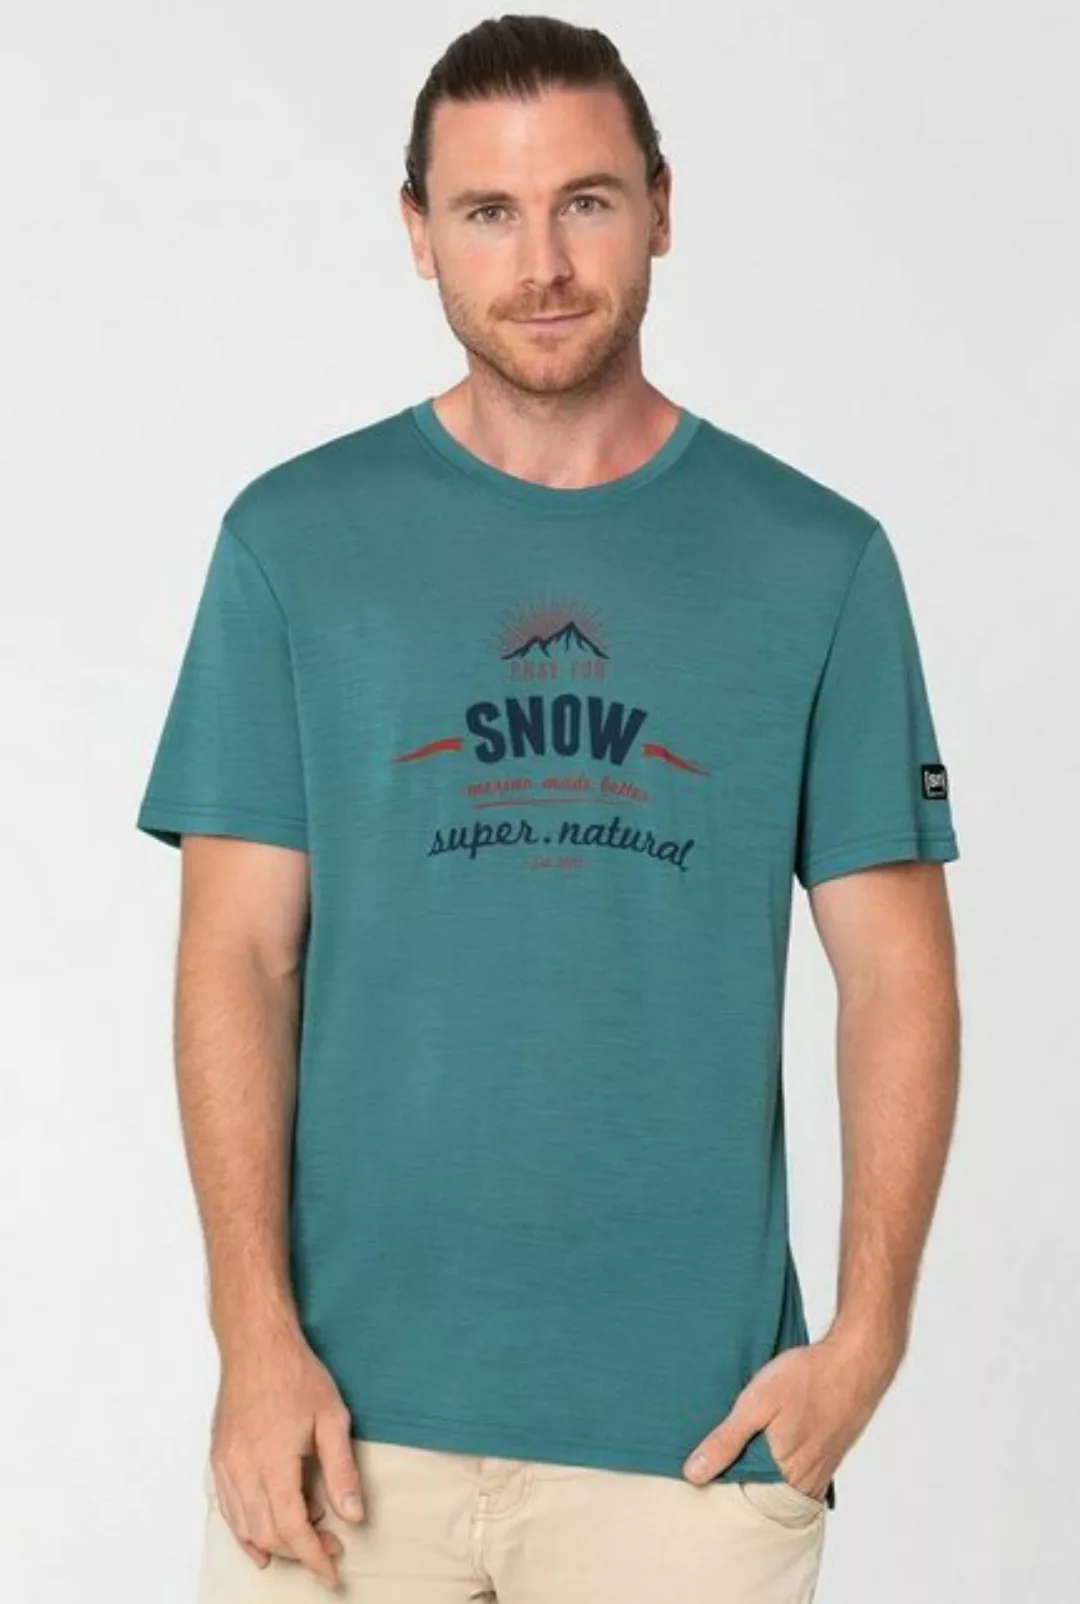 SUPER.NATURAL Print-Shirt Merino Funktionsshirt M PRAY FOR SNOW TEE funktio günstig online kaufen